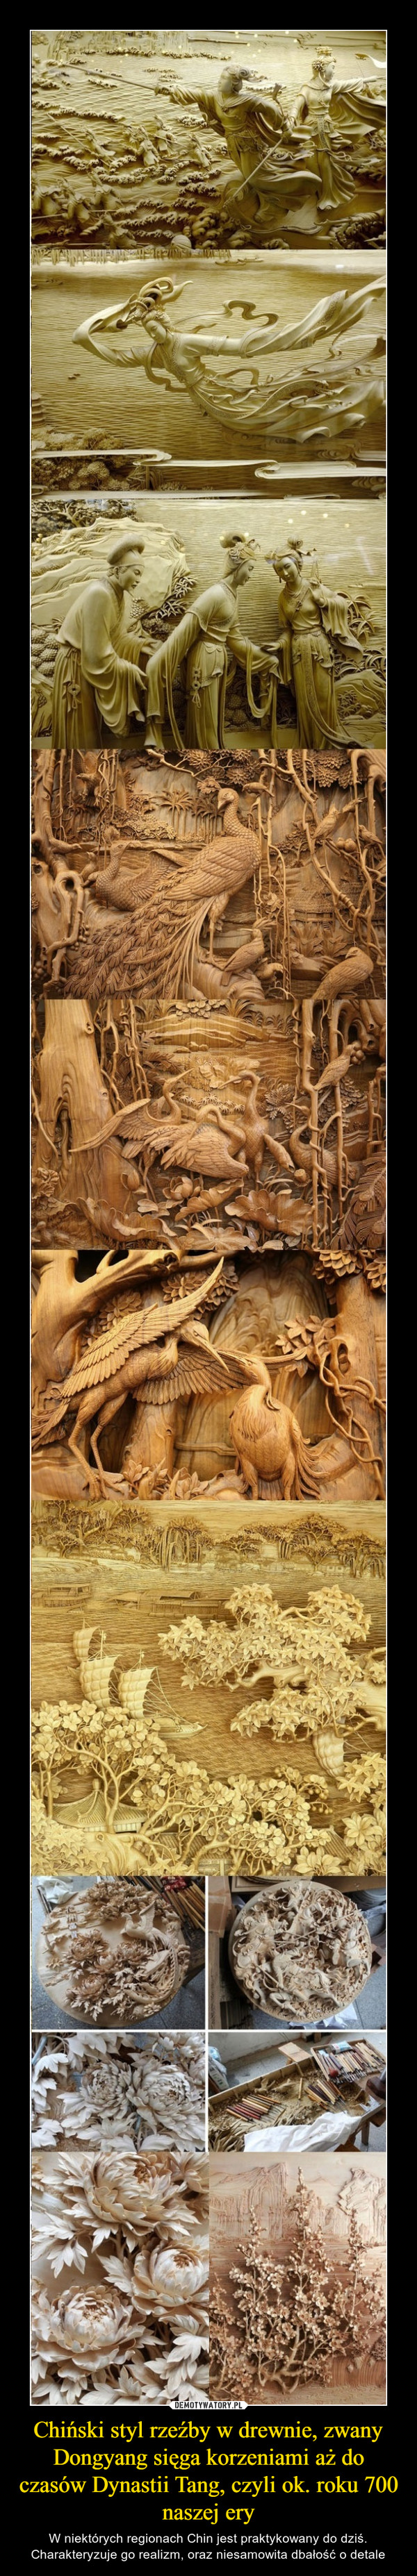 Chiński styl rzeźby w drewnie, zwany Dongyang sięga korzeniami aż do czasów Dynastii Tang, czyli ok. roku 700 naszej ery